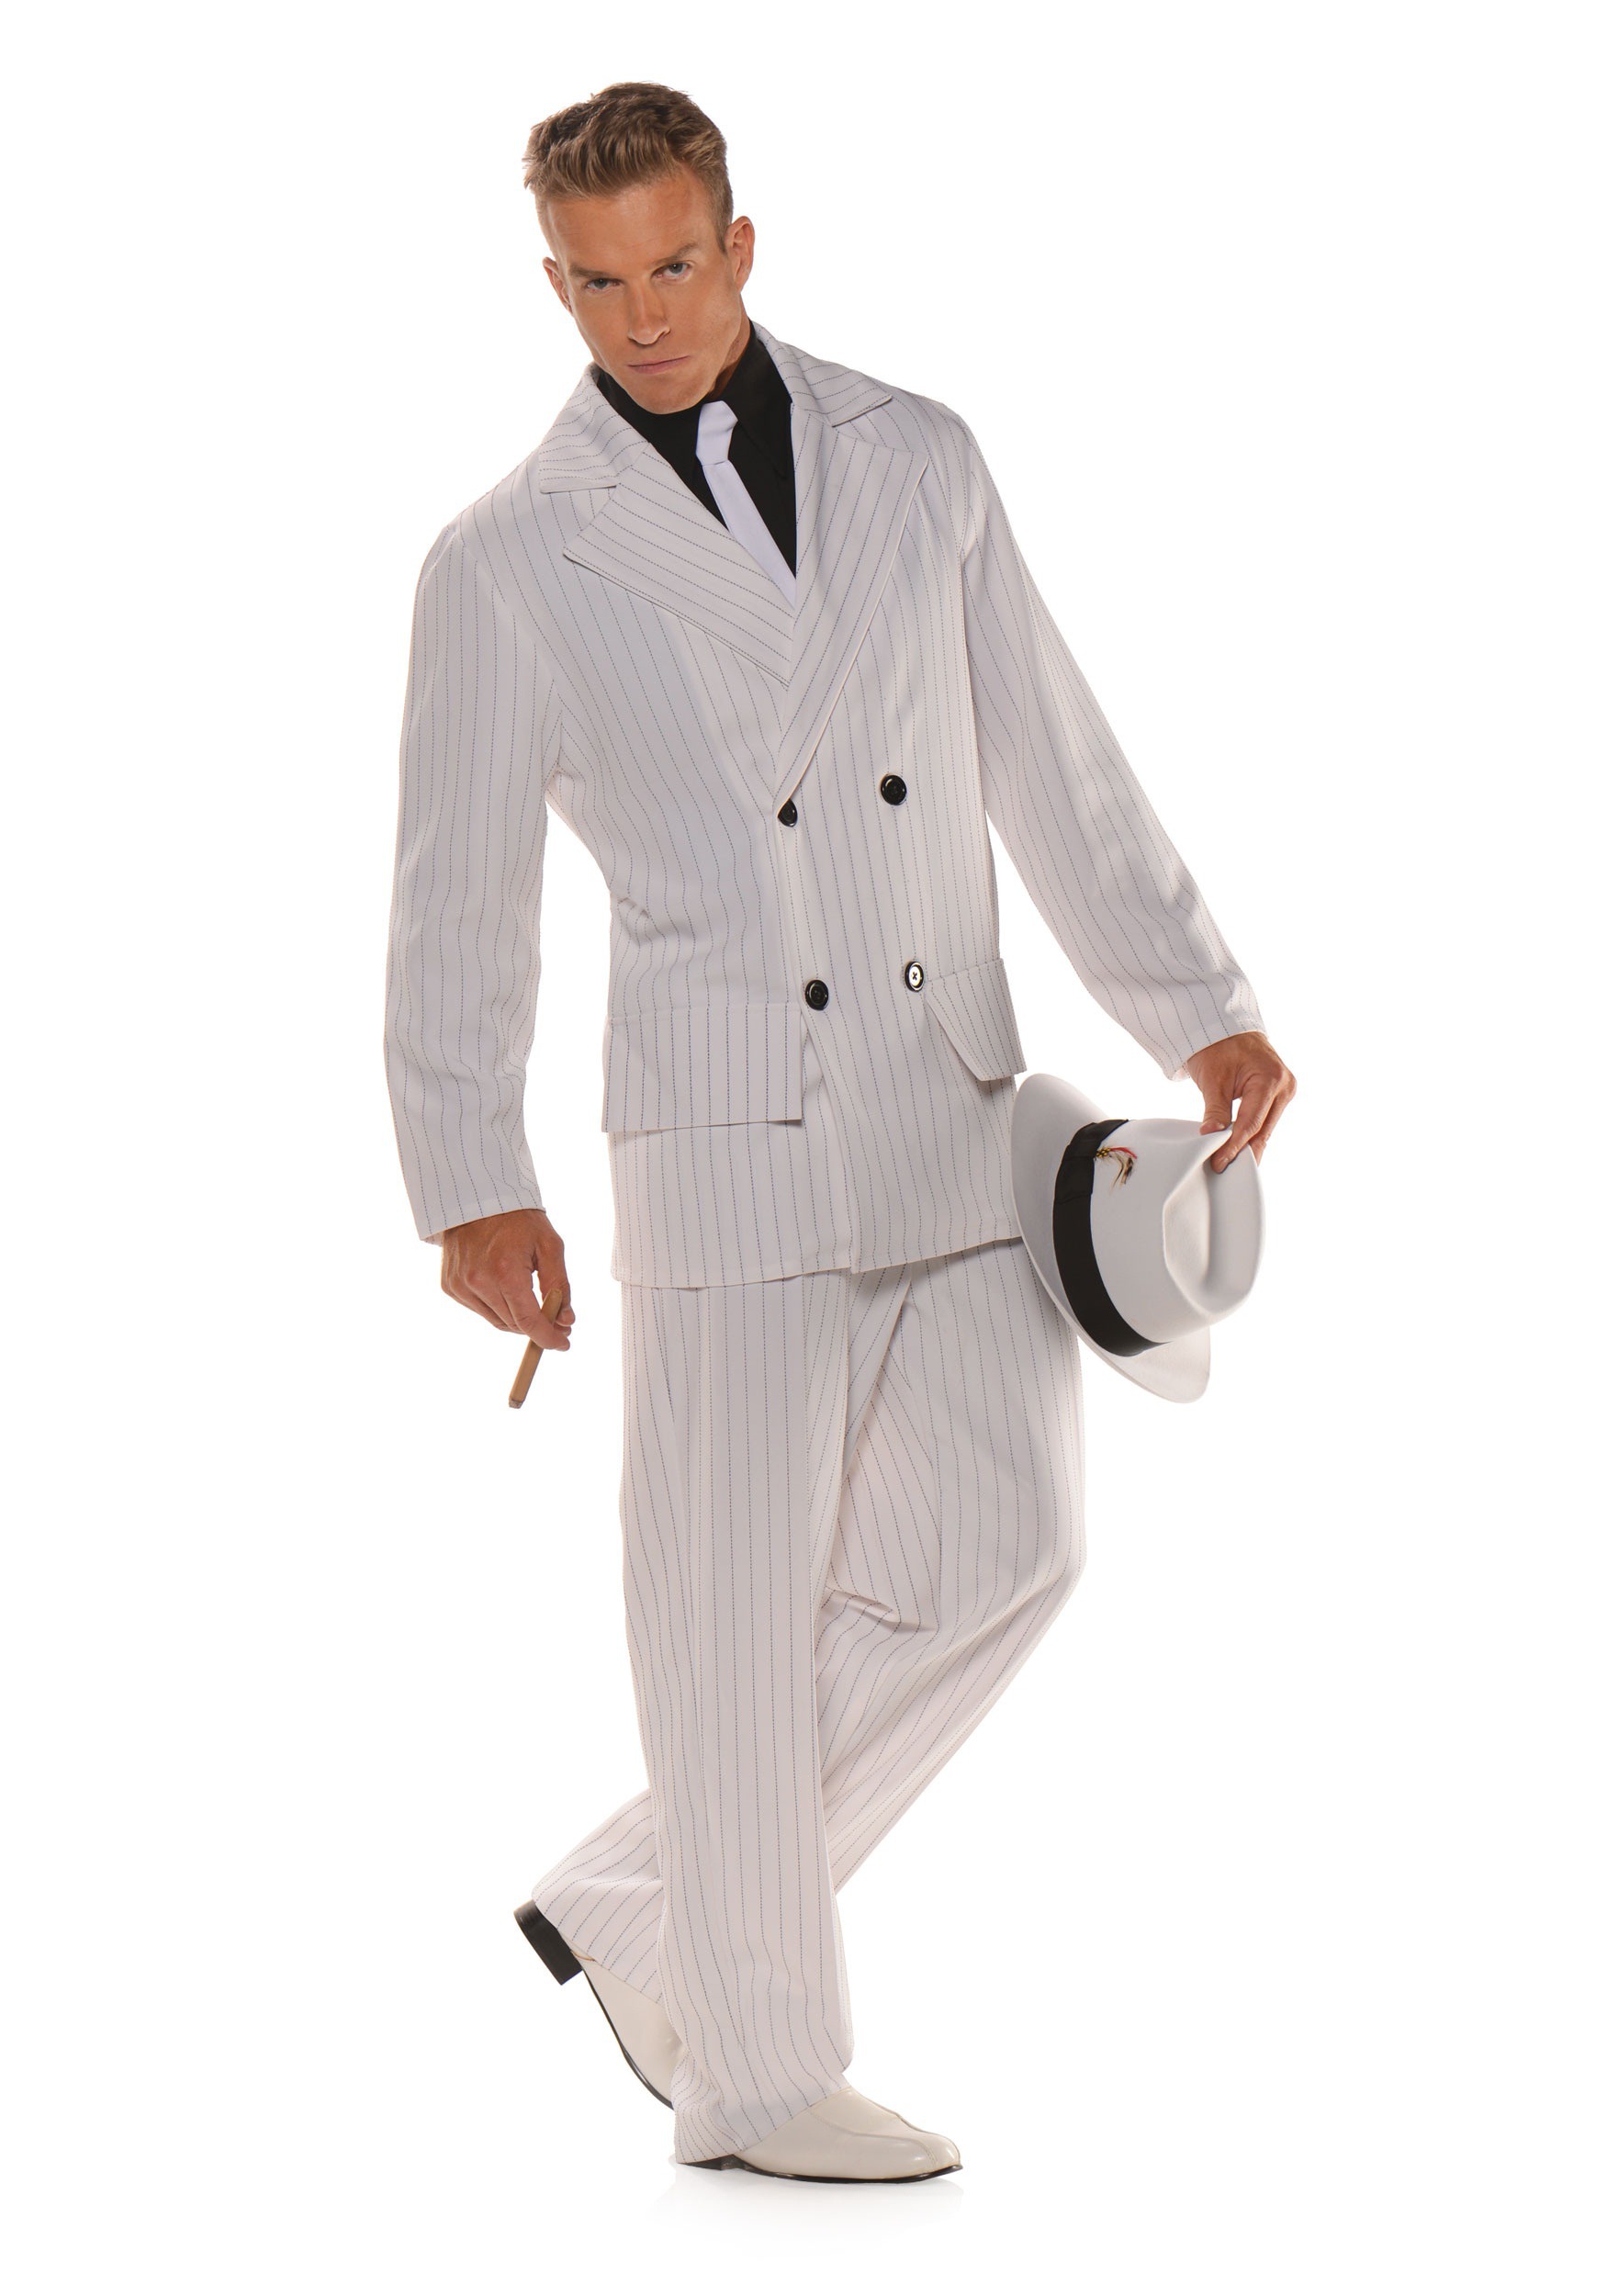 Smooth Criminal Costume for Men